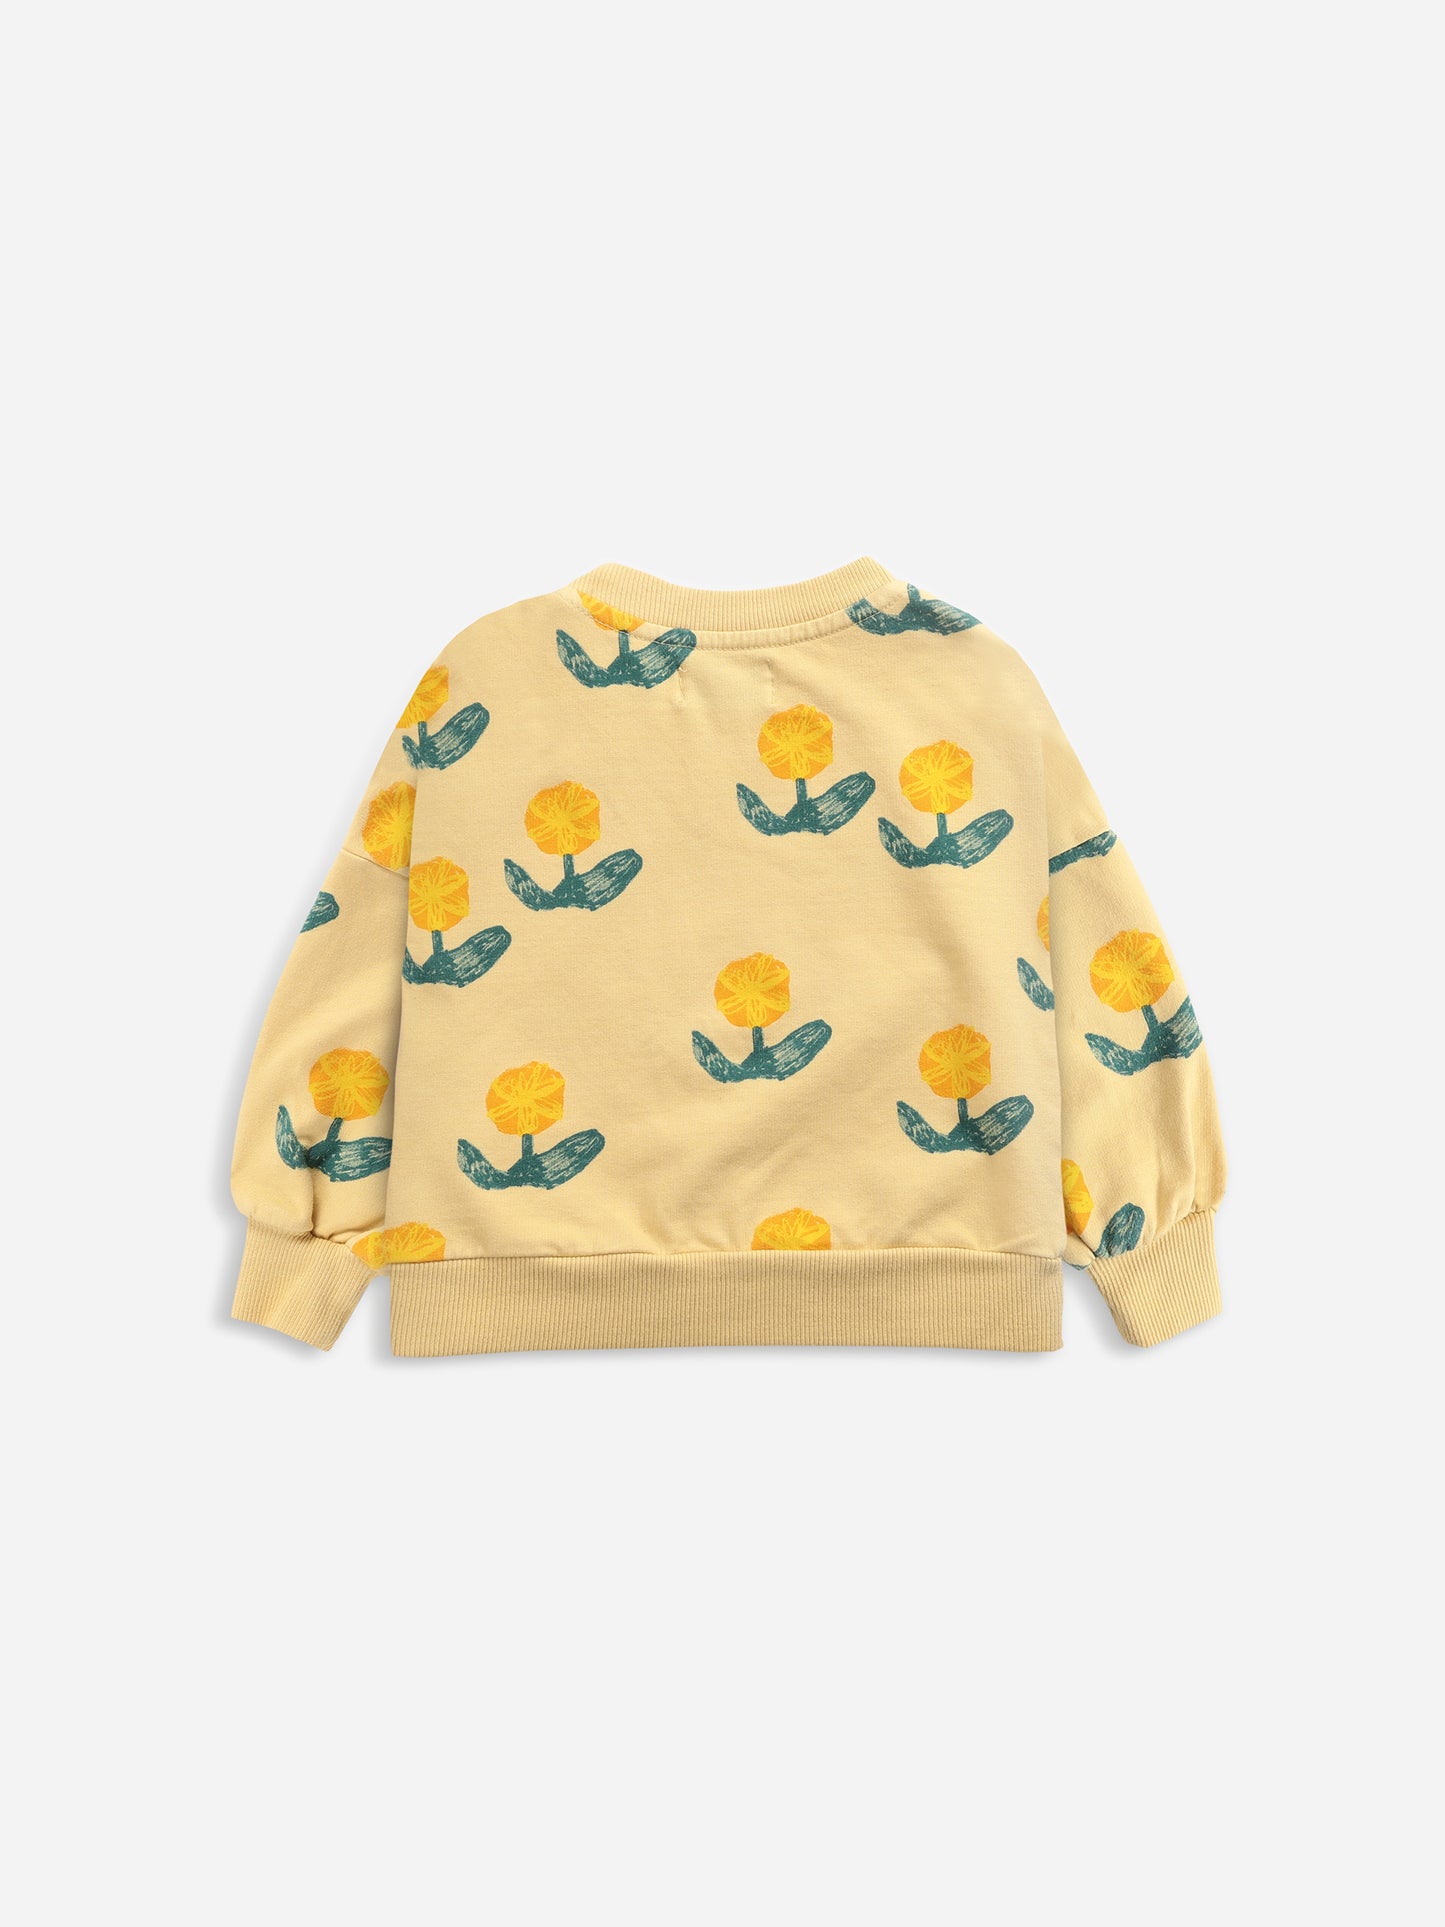 Wallflowers All Over Sweatshirt